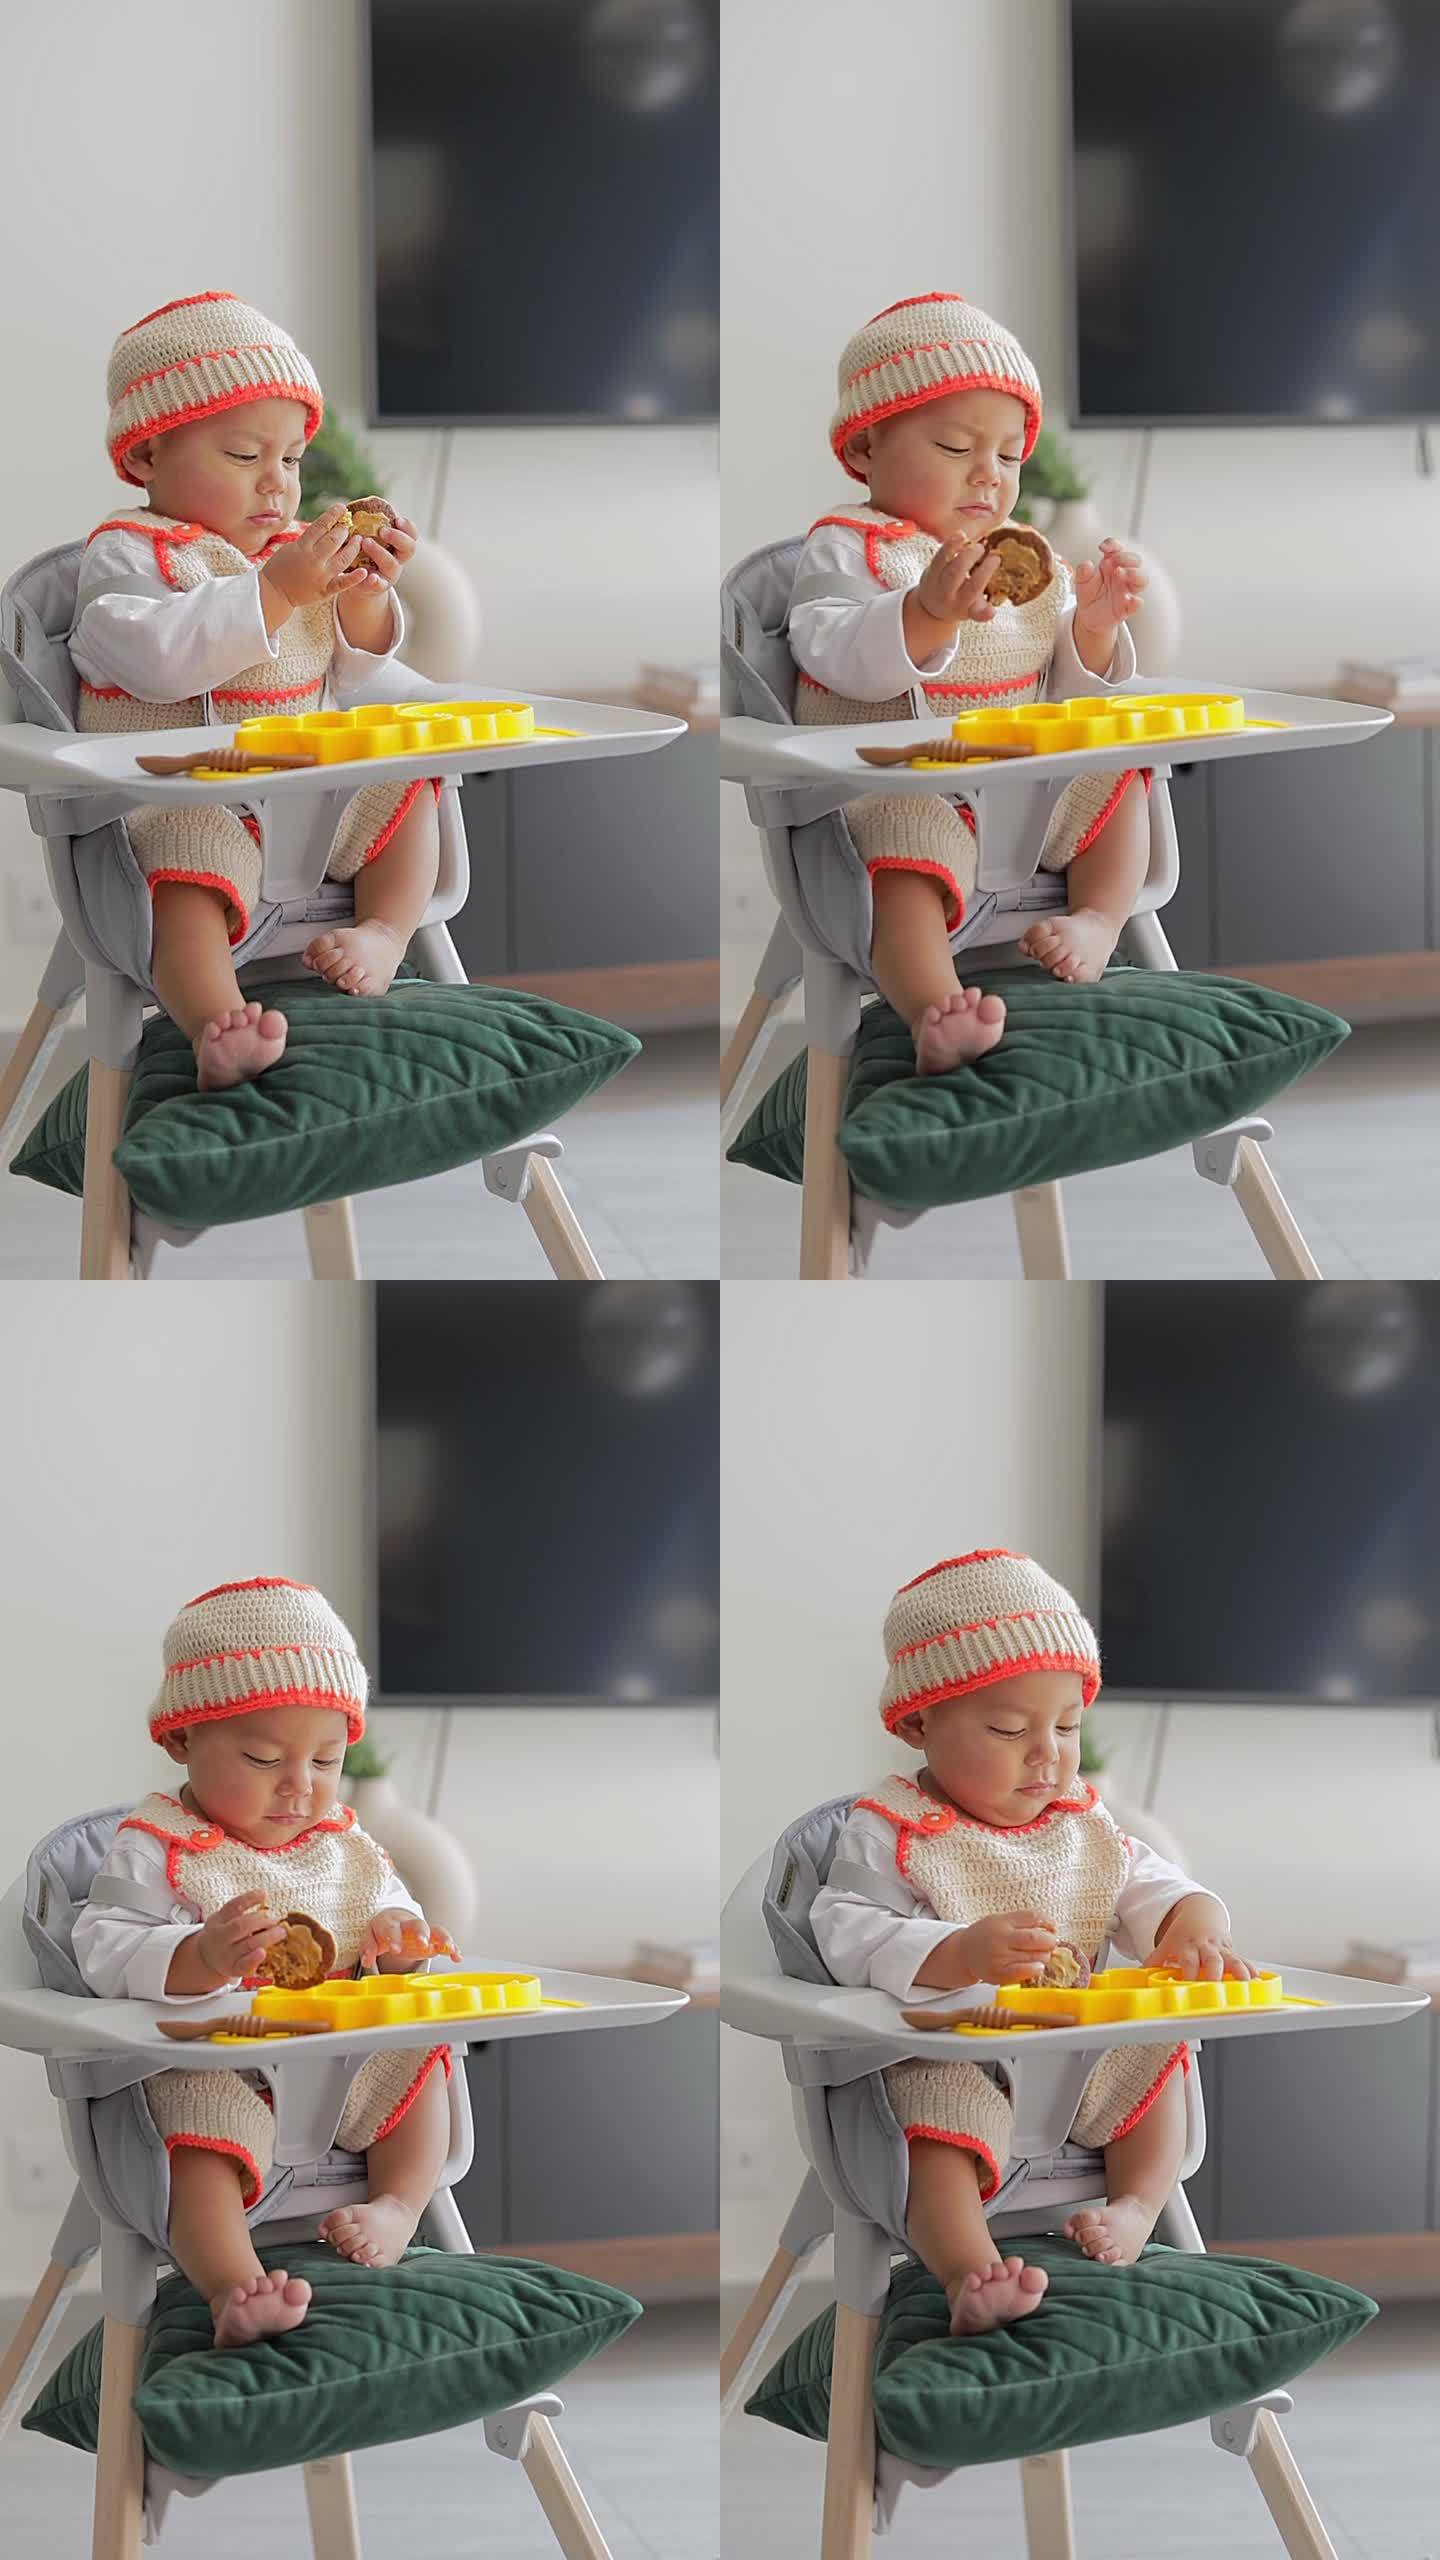 拉丁裔婴儿坐在椅子上用手吃东西。婴儿补充喂养。BLW